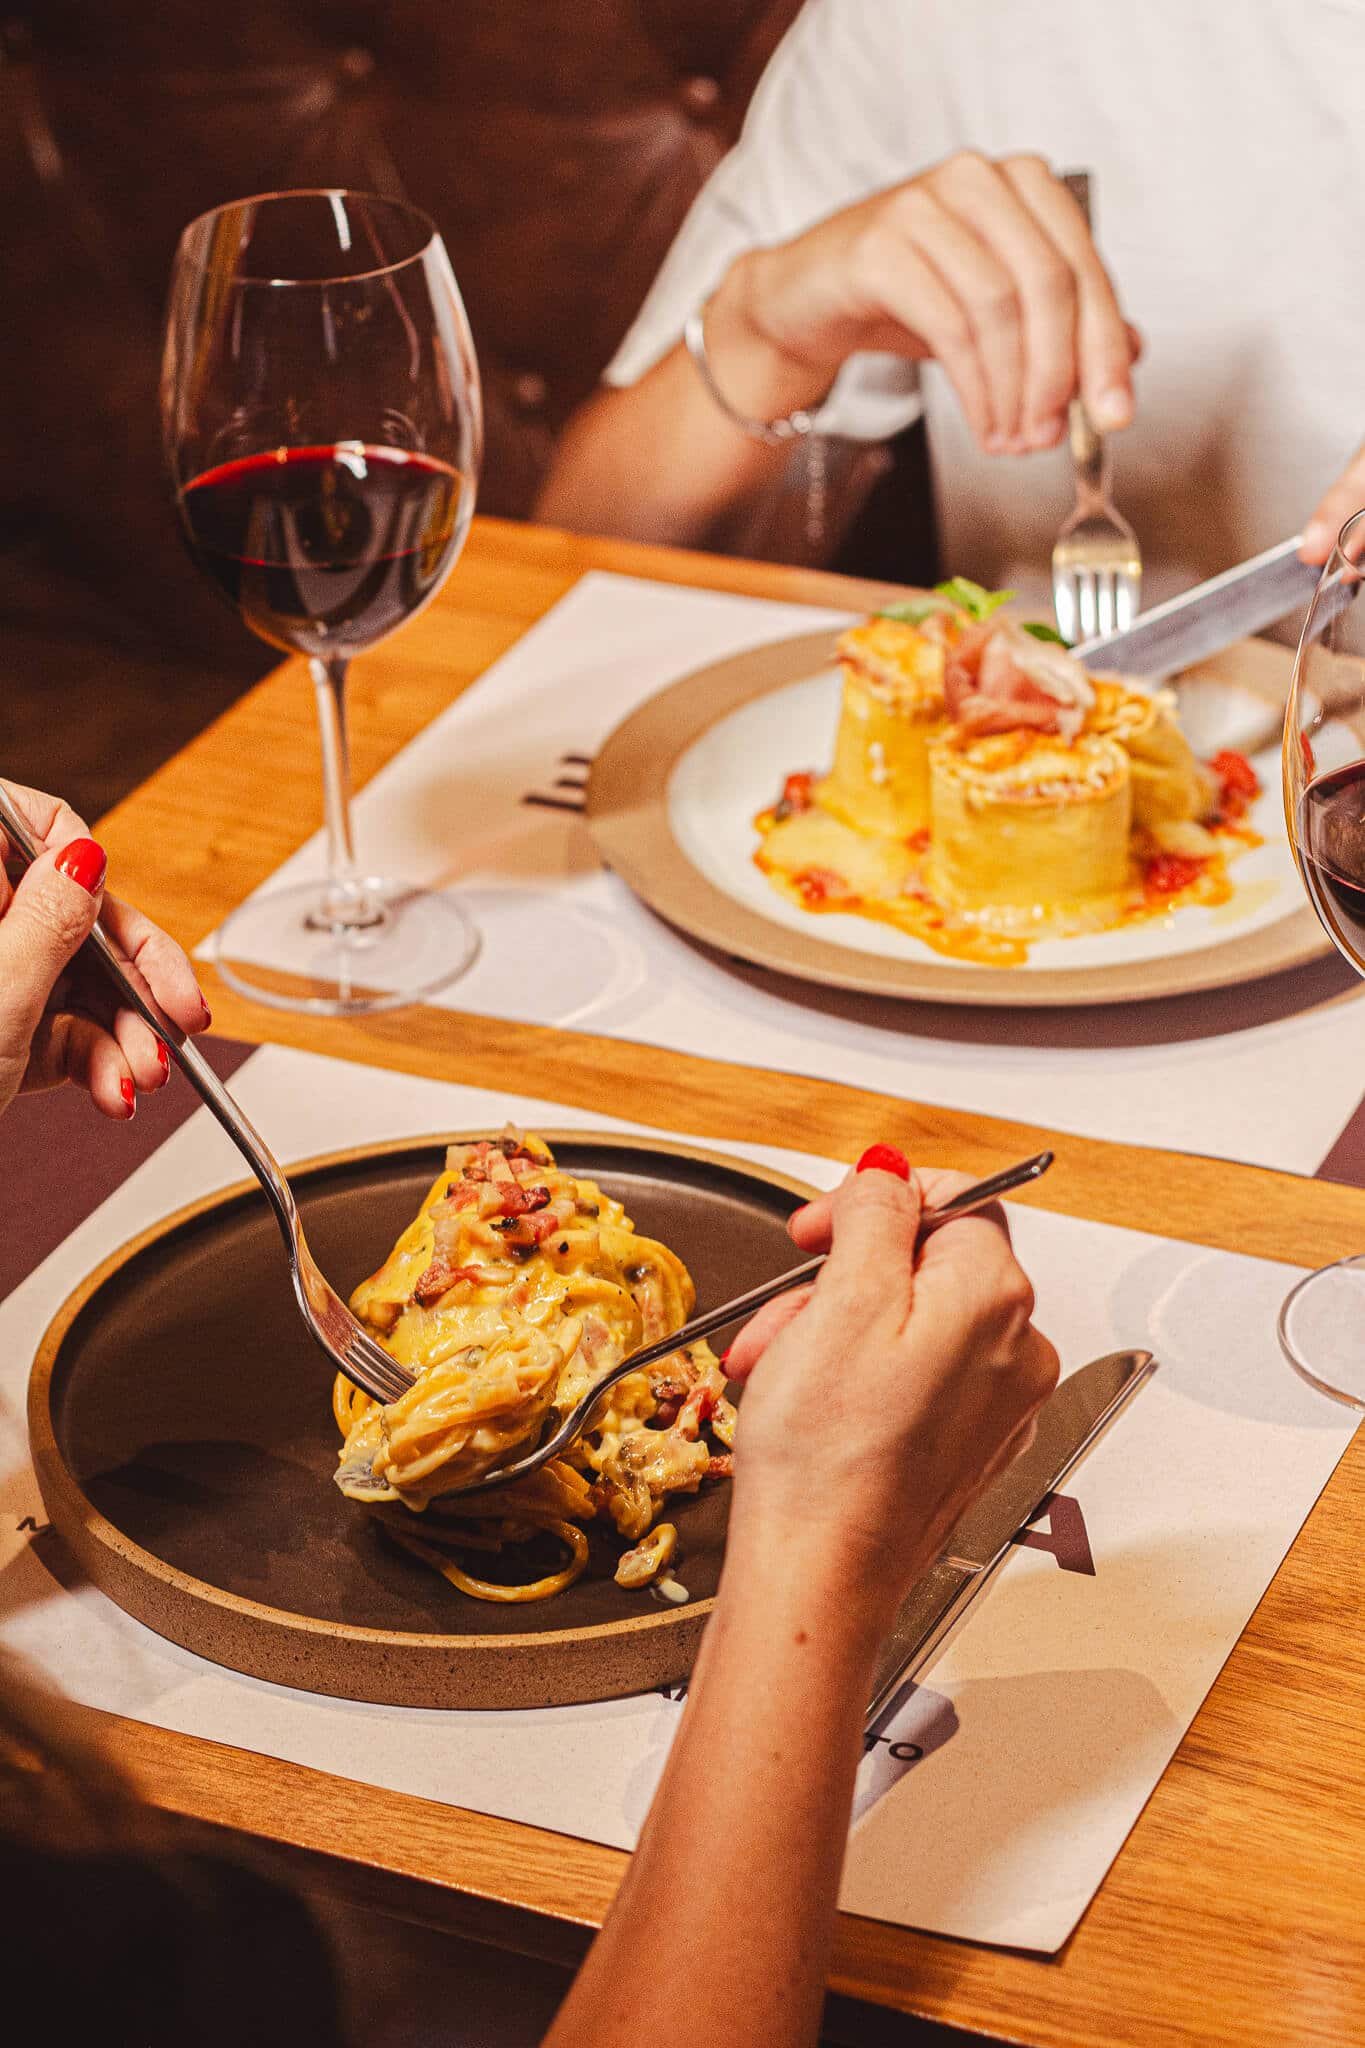 foto mostra duas pessoas comendo à mesa posta, uma com coliseu, a outra com spaghetti. há uma taça de vinho na mesa